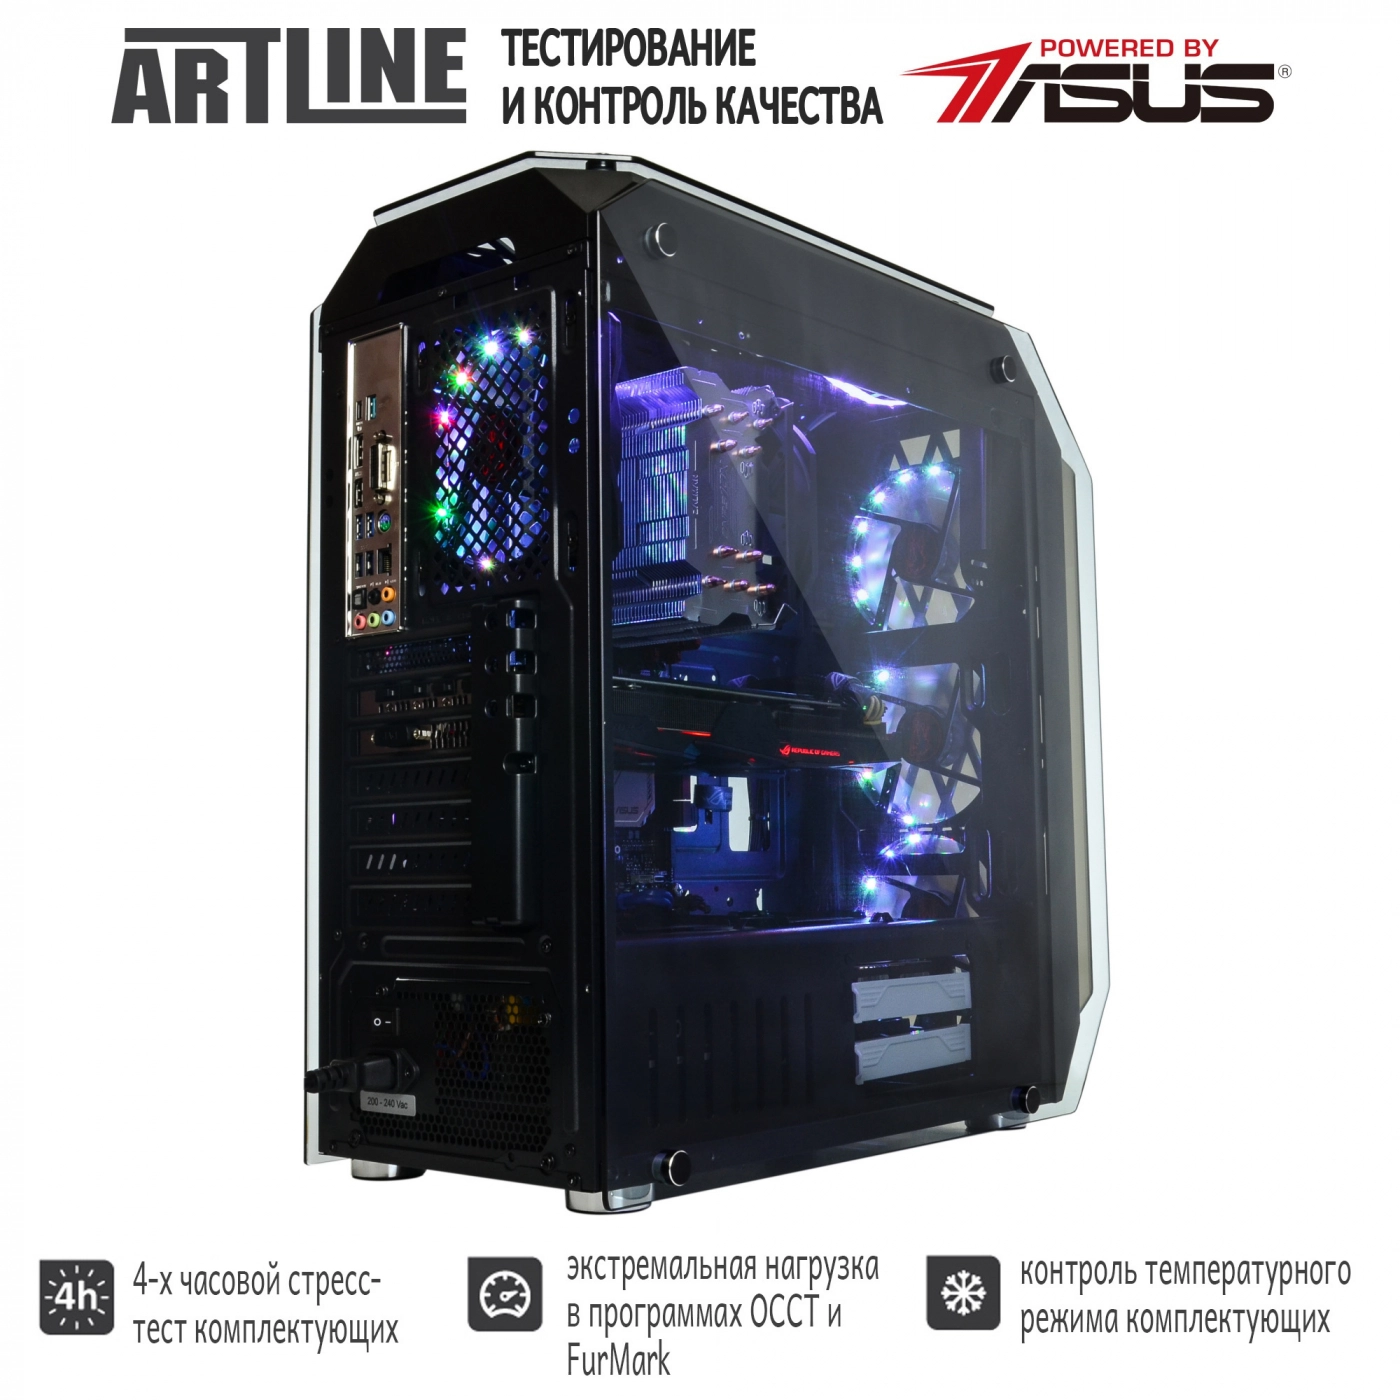 Купить Компьютер ARTLINE Gaming X92v05 - фото 7